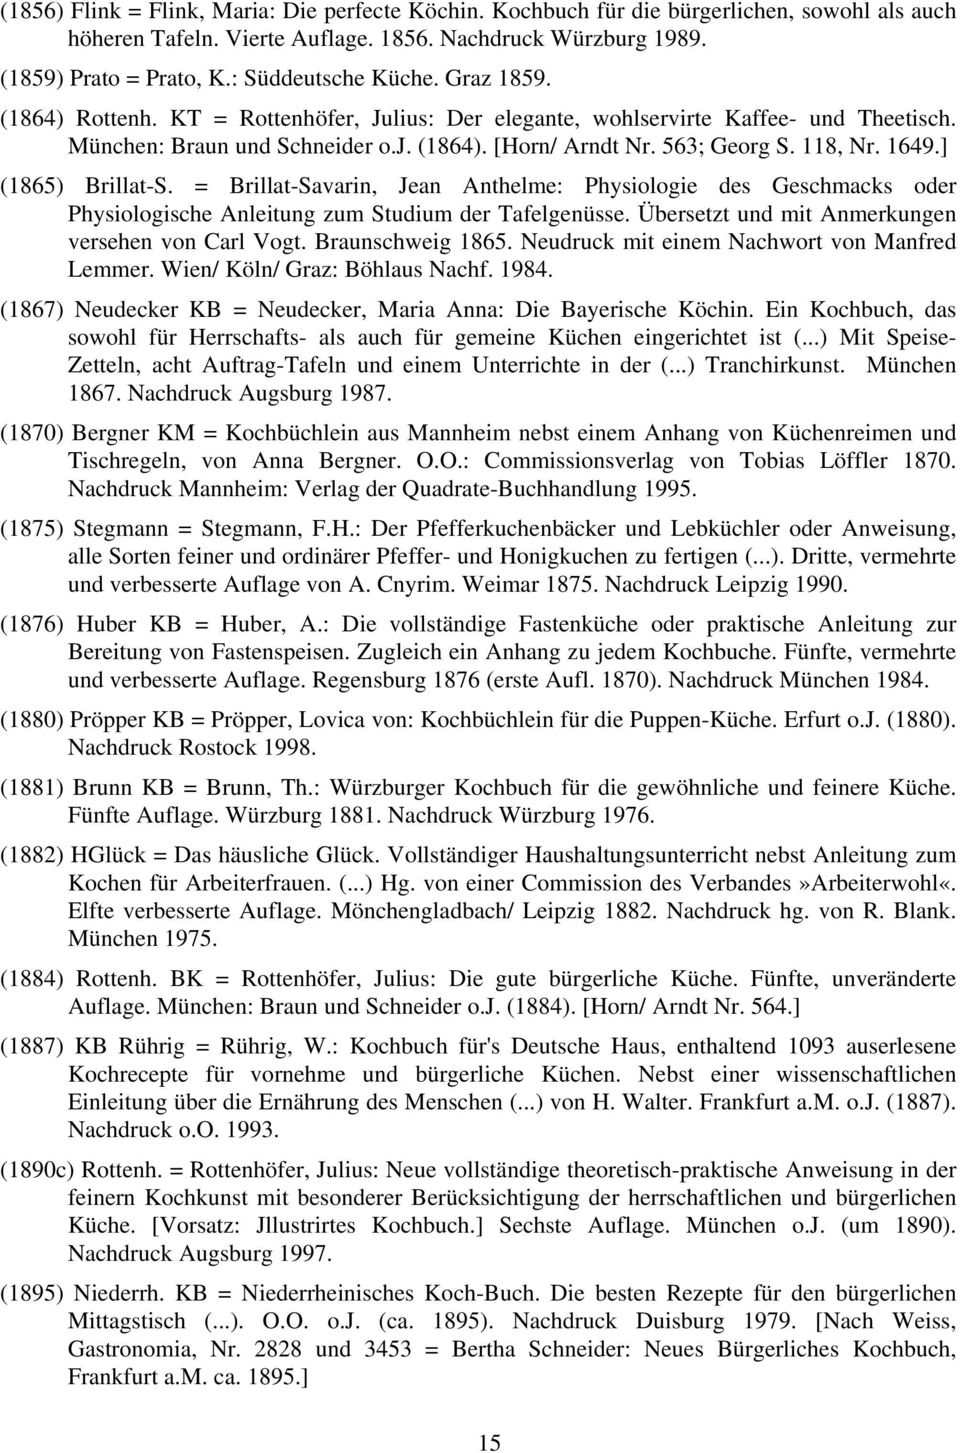 118, Nr. 1649.] (1865) Brillat-S. = Brillat-Savarin, Jean Anthelme: Physiologie des Geschmacks oder Physiologische Anleitung zum Studium der Tafelgenüsse.